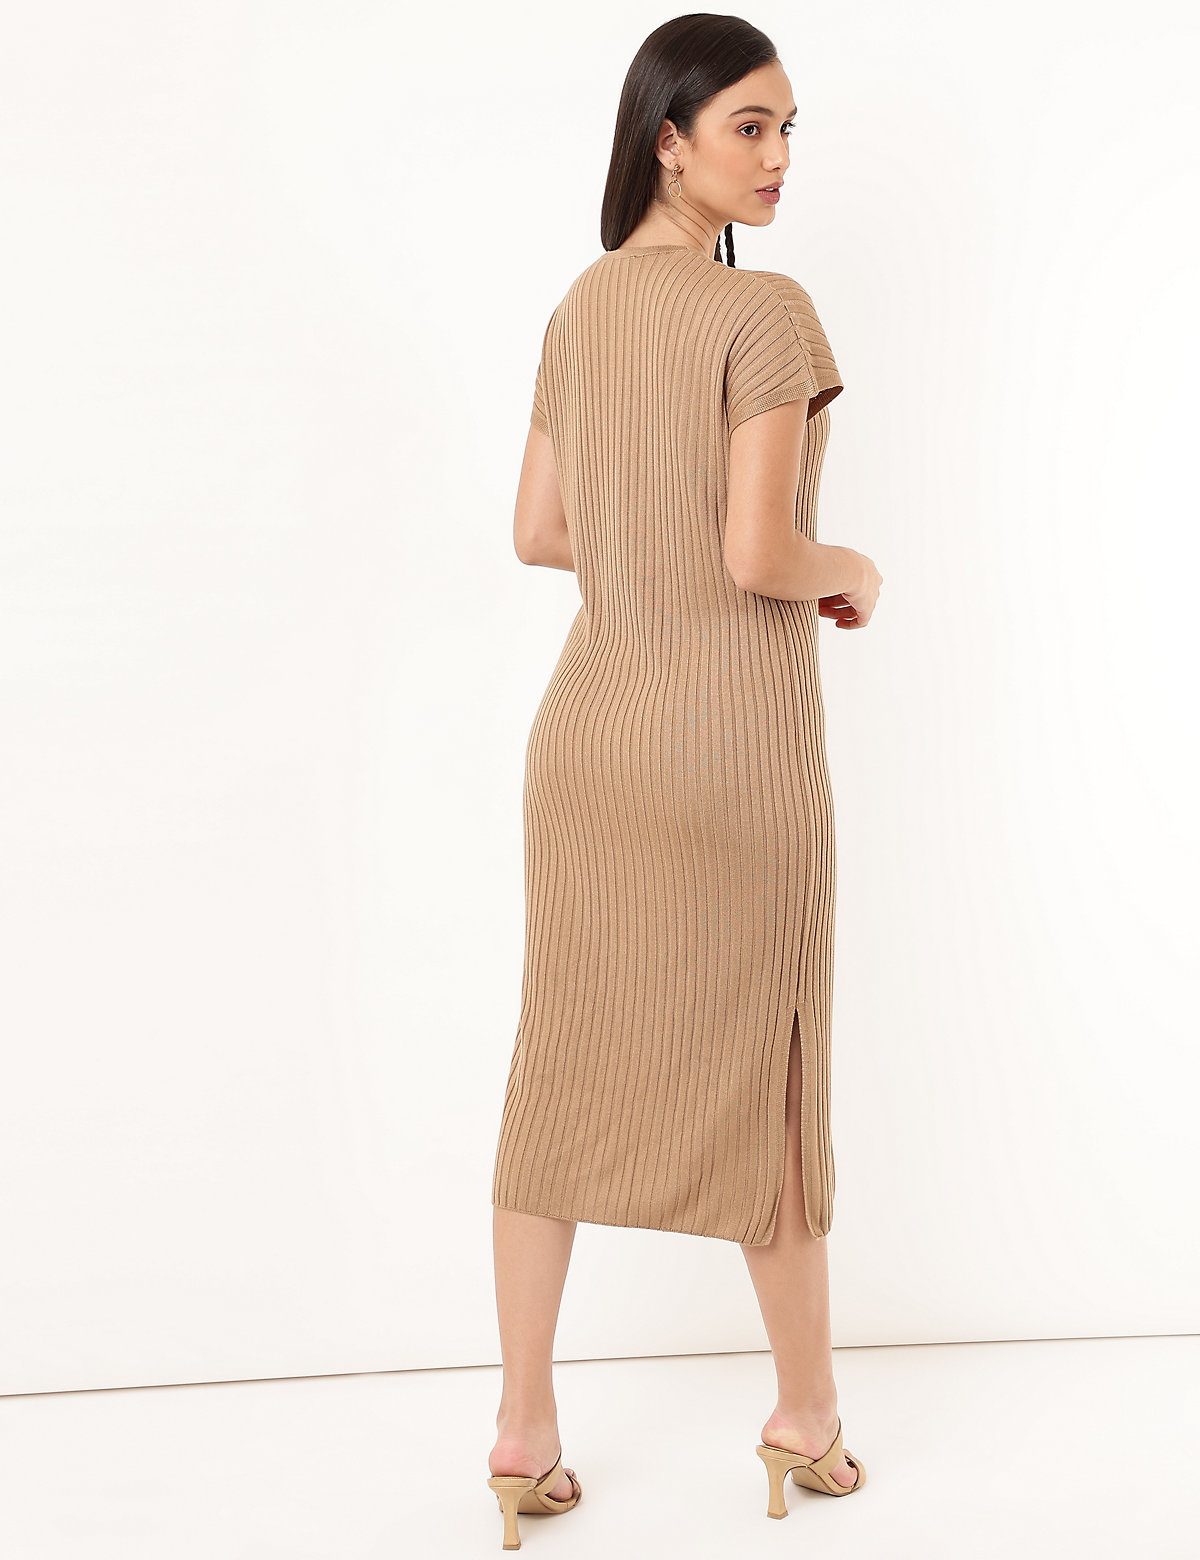 Viscose Mix Striped Knitted Dress